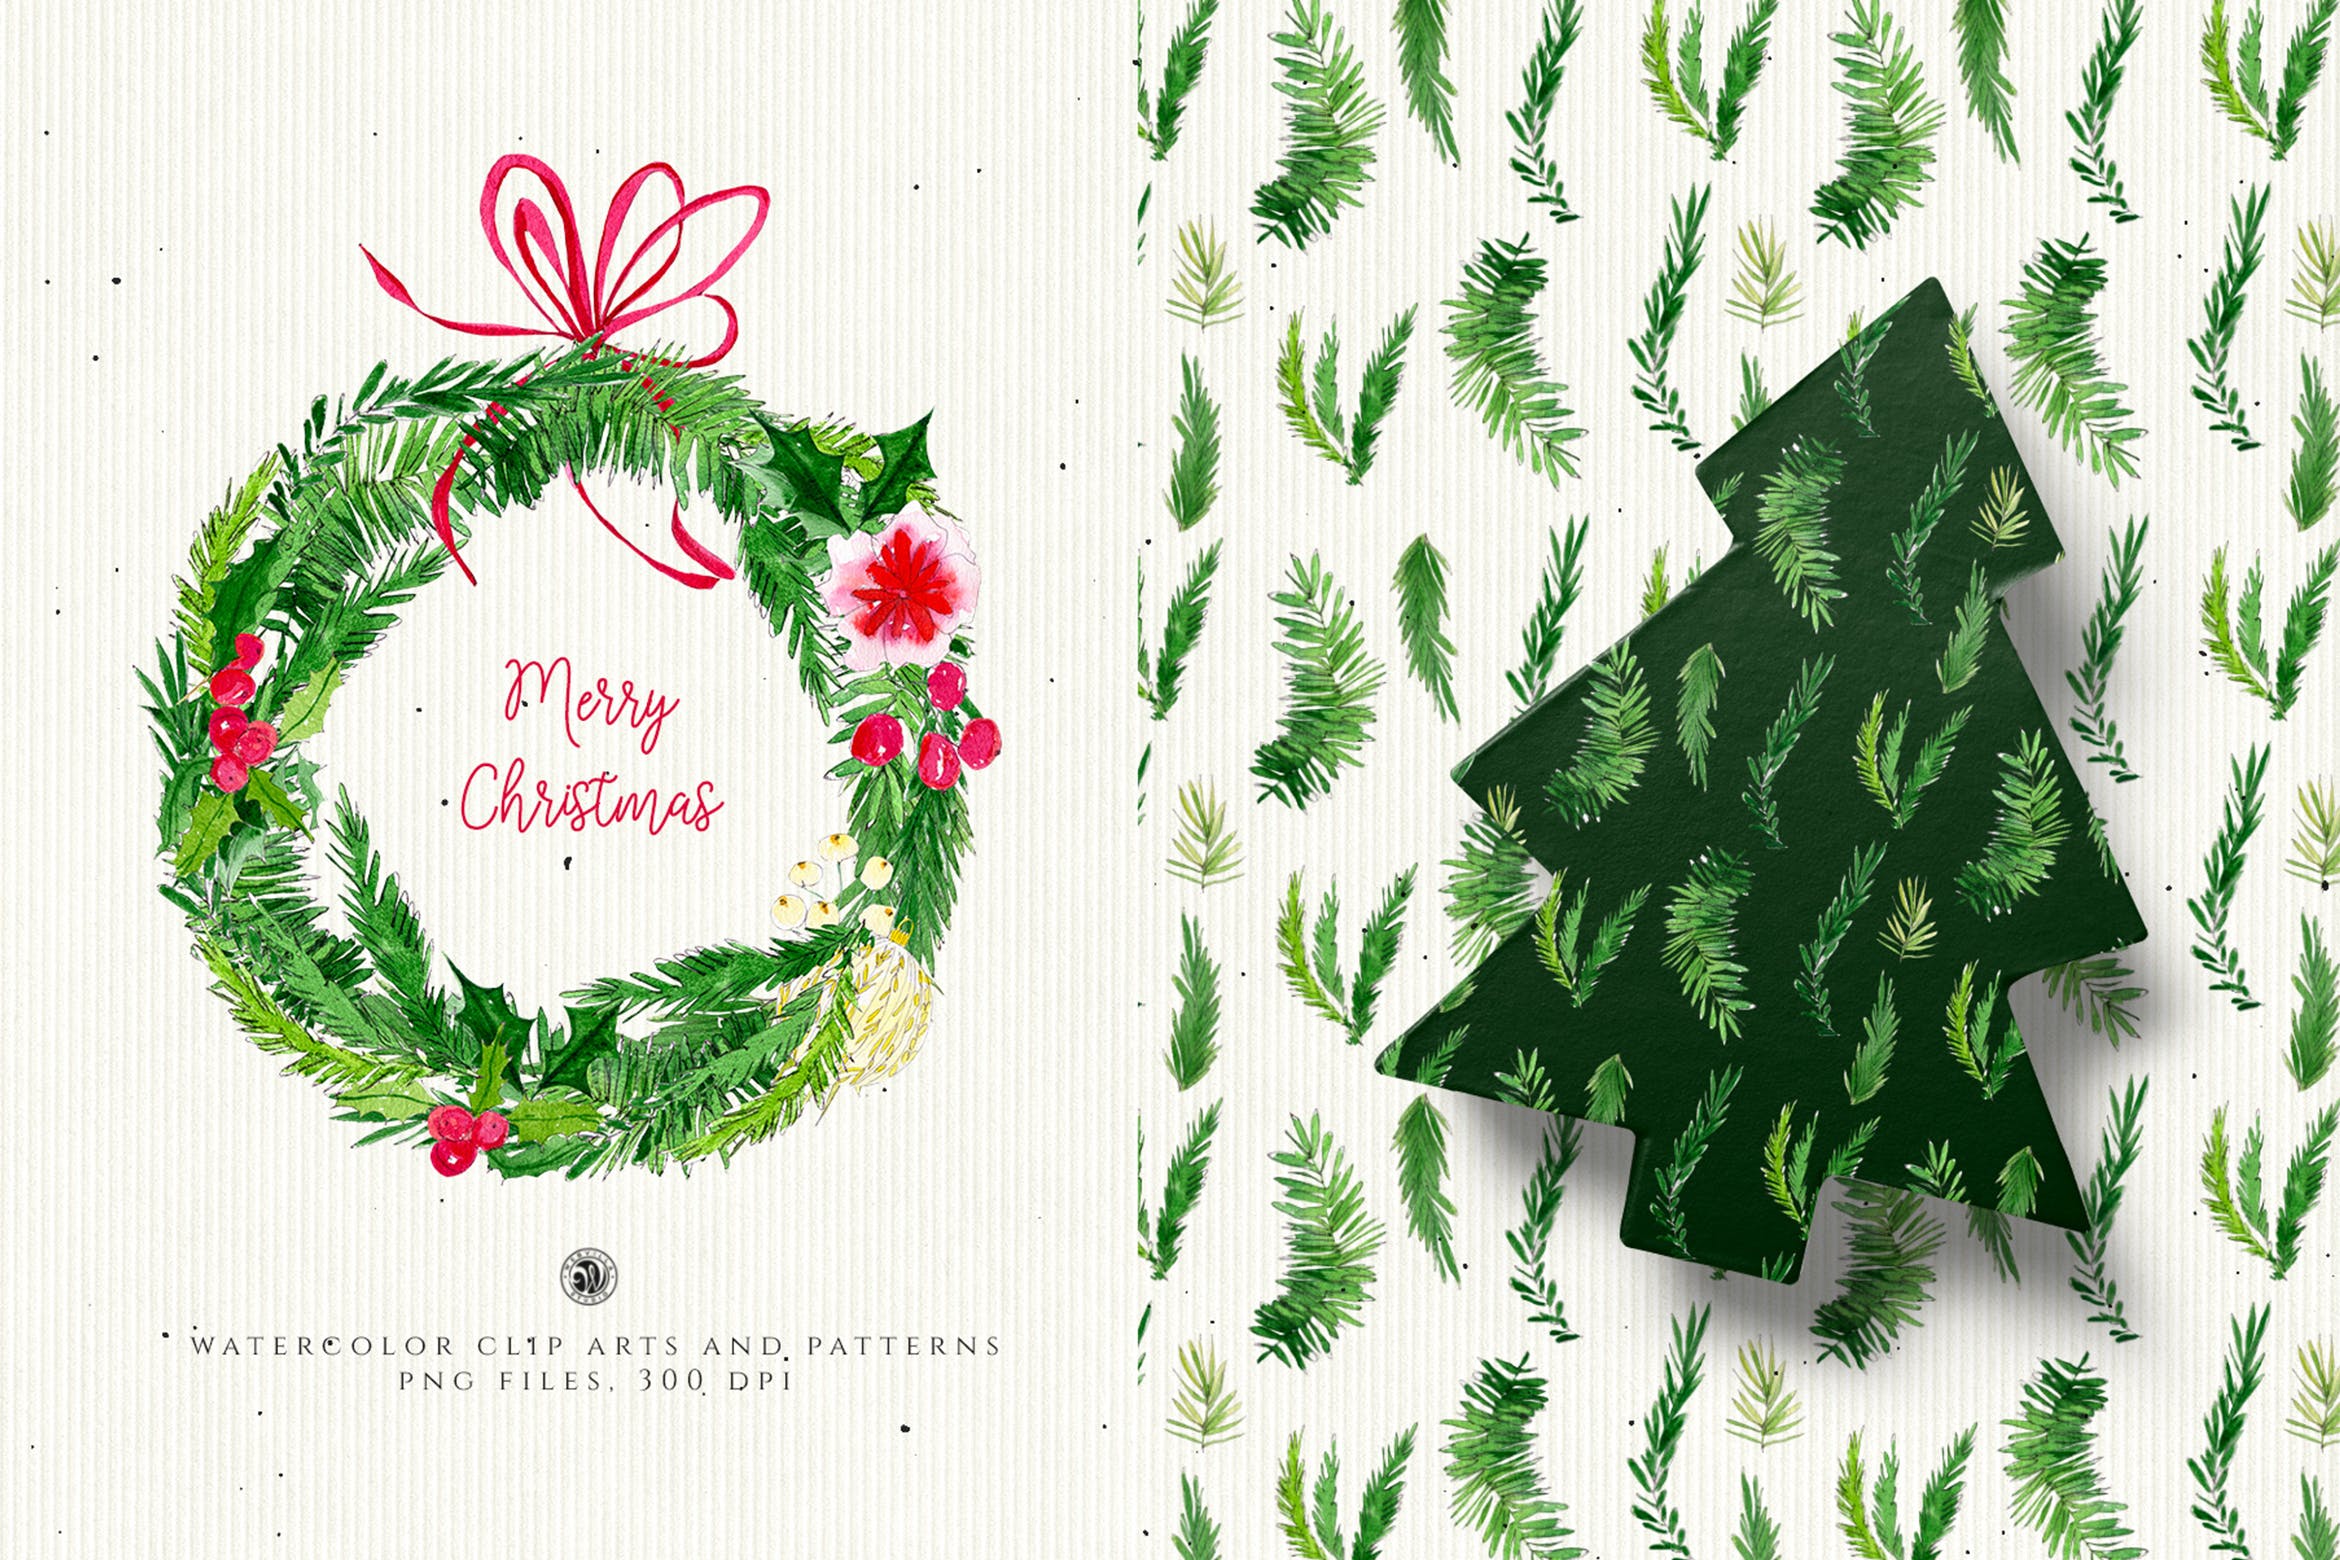 水彩手绘圣诞装饰元素PNG高清图片素材 Christmas Decorations插图